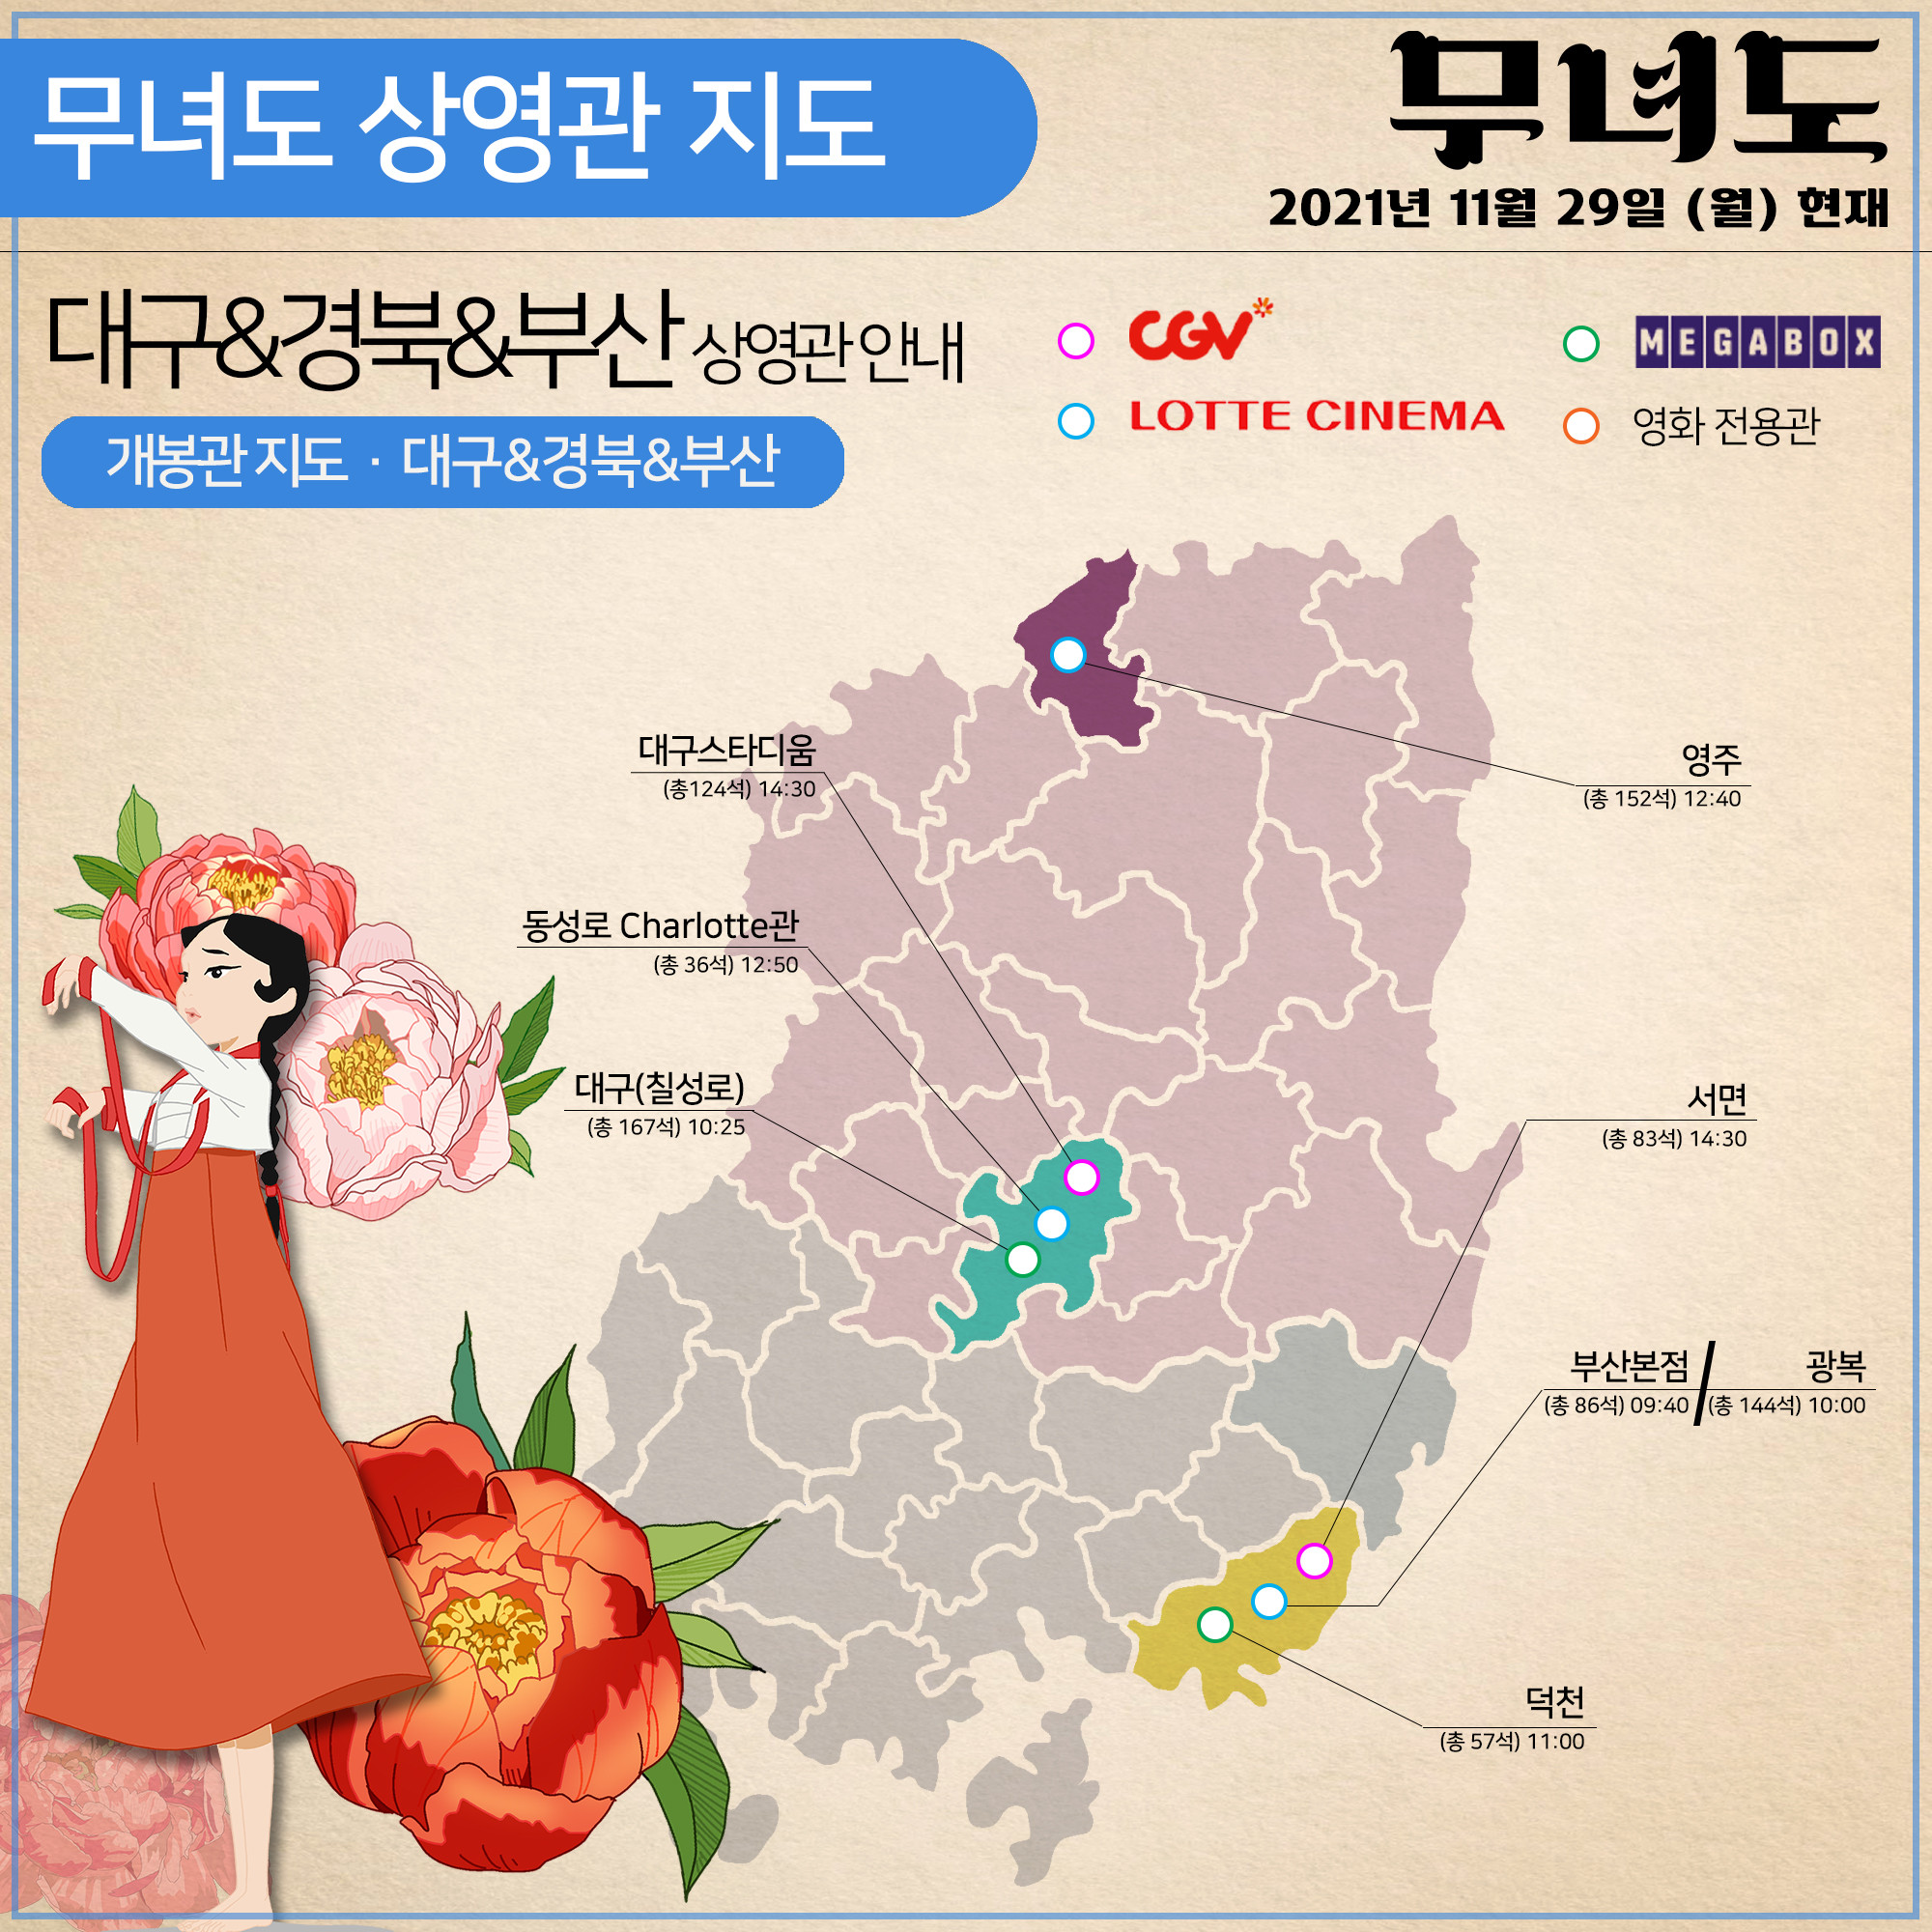 저용량_상영관안내_지도_대구경북부산 29일.jpg